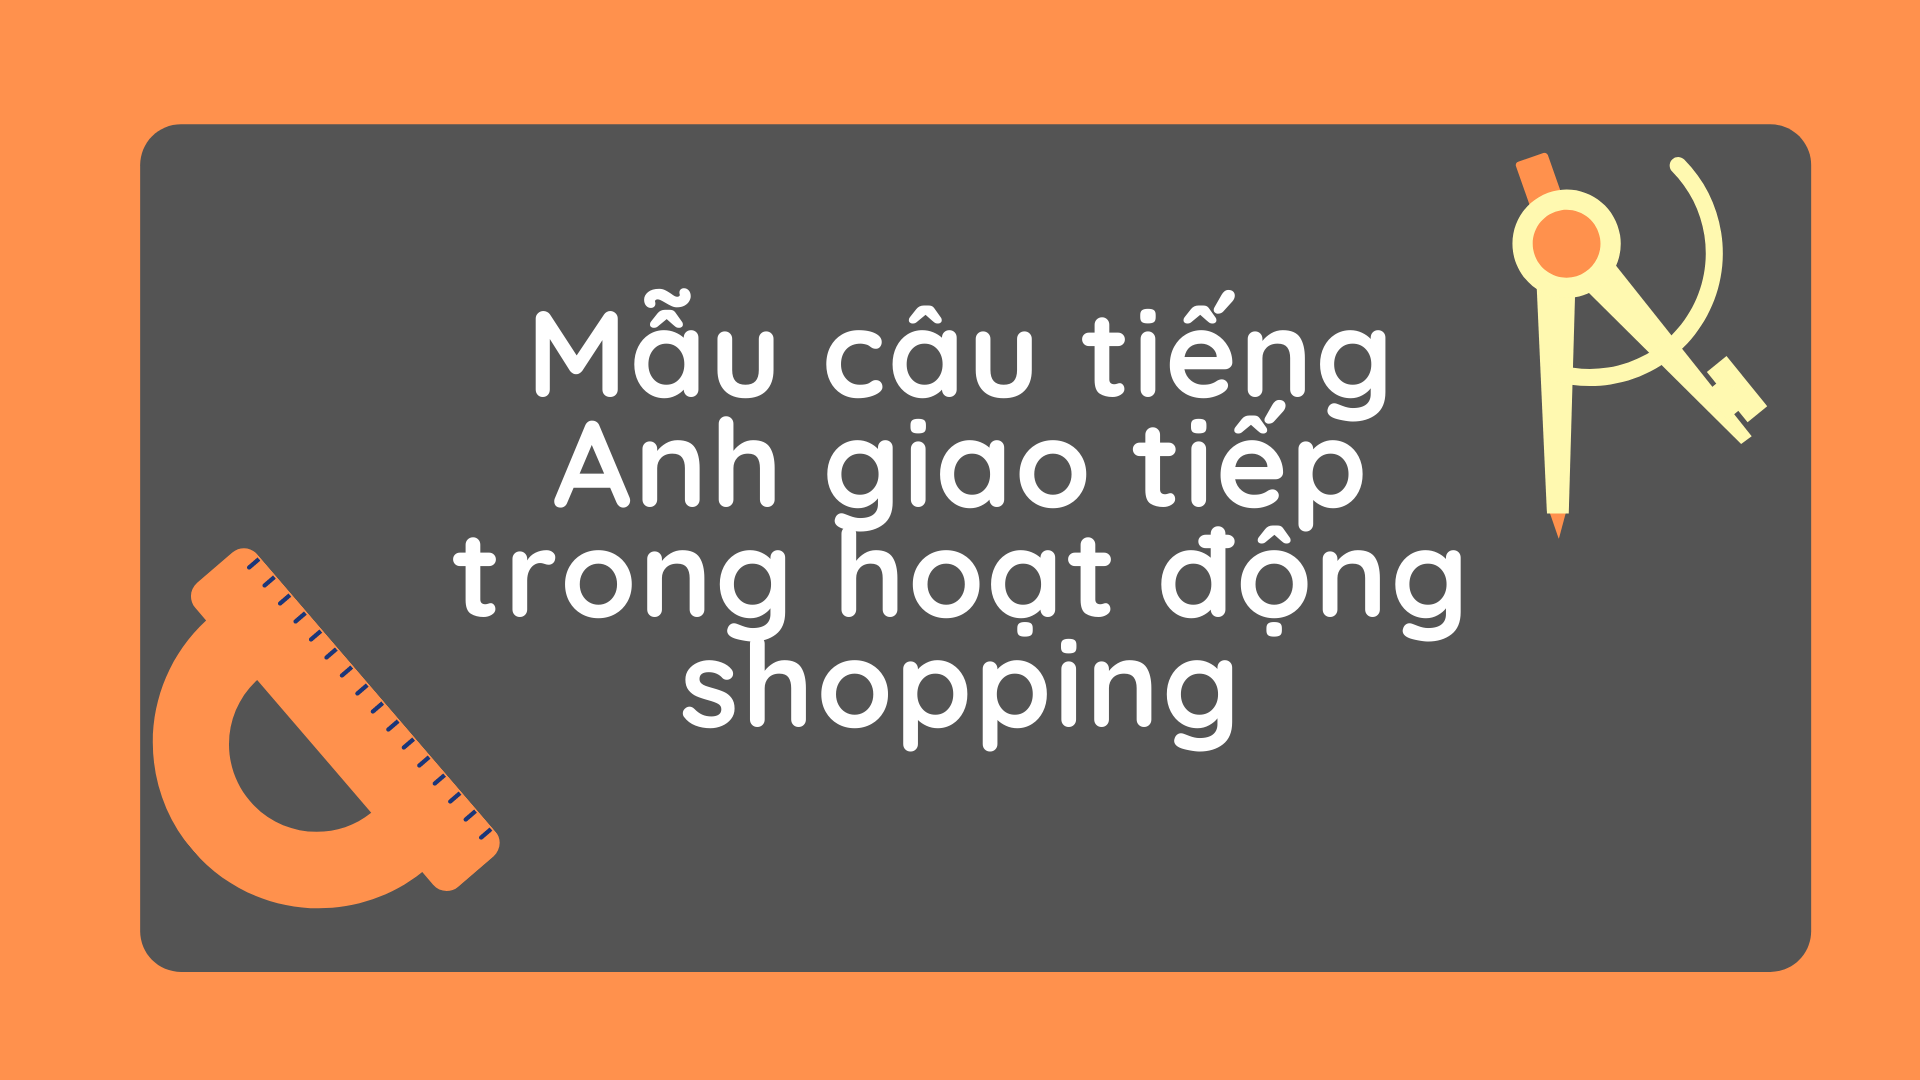 Mẫu câu tiếng Anh giao tiếp trong hoạt động shopping